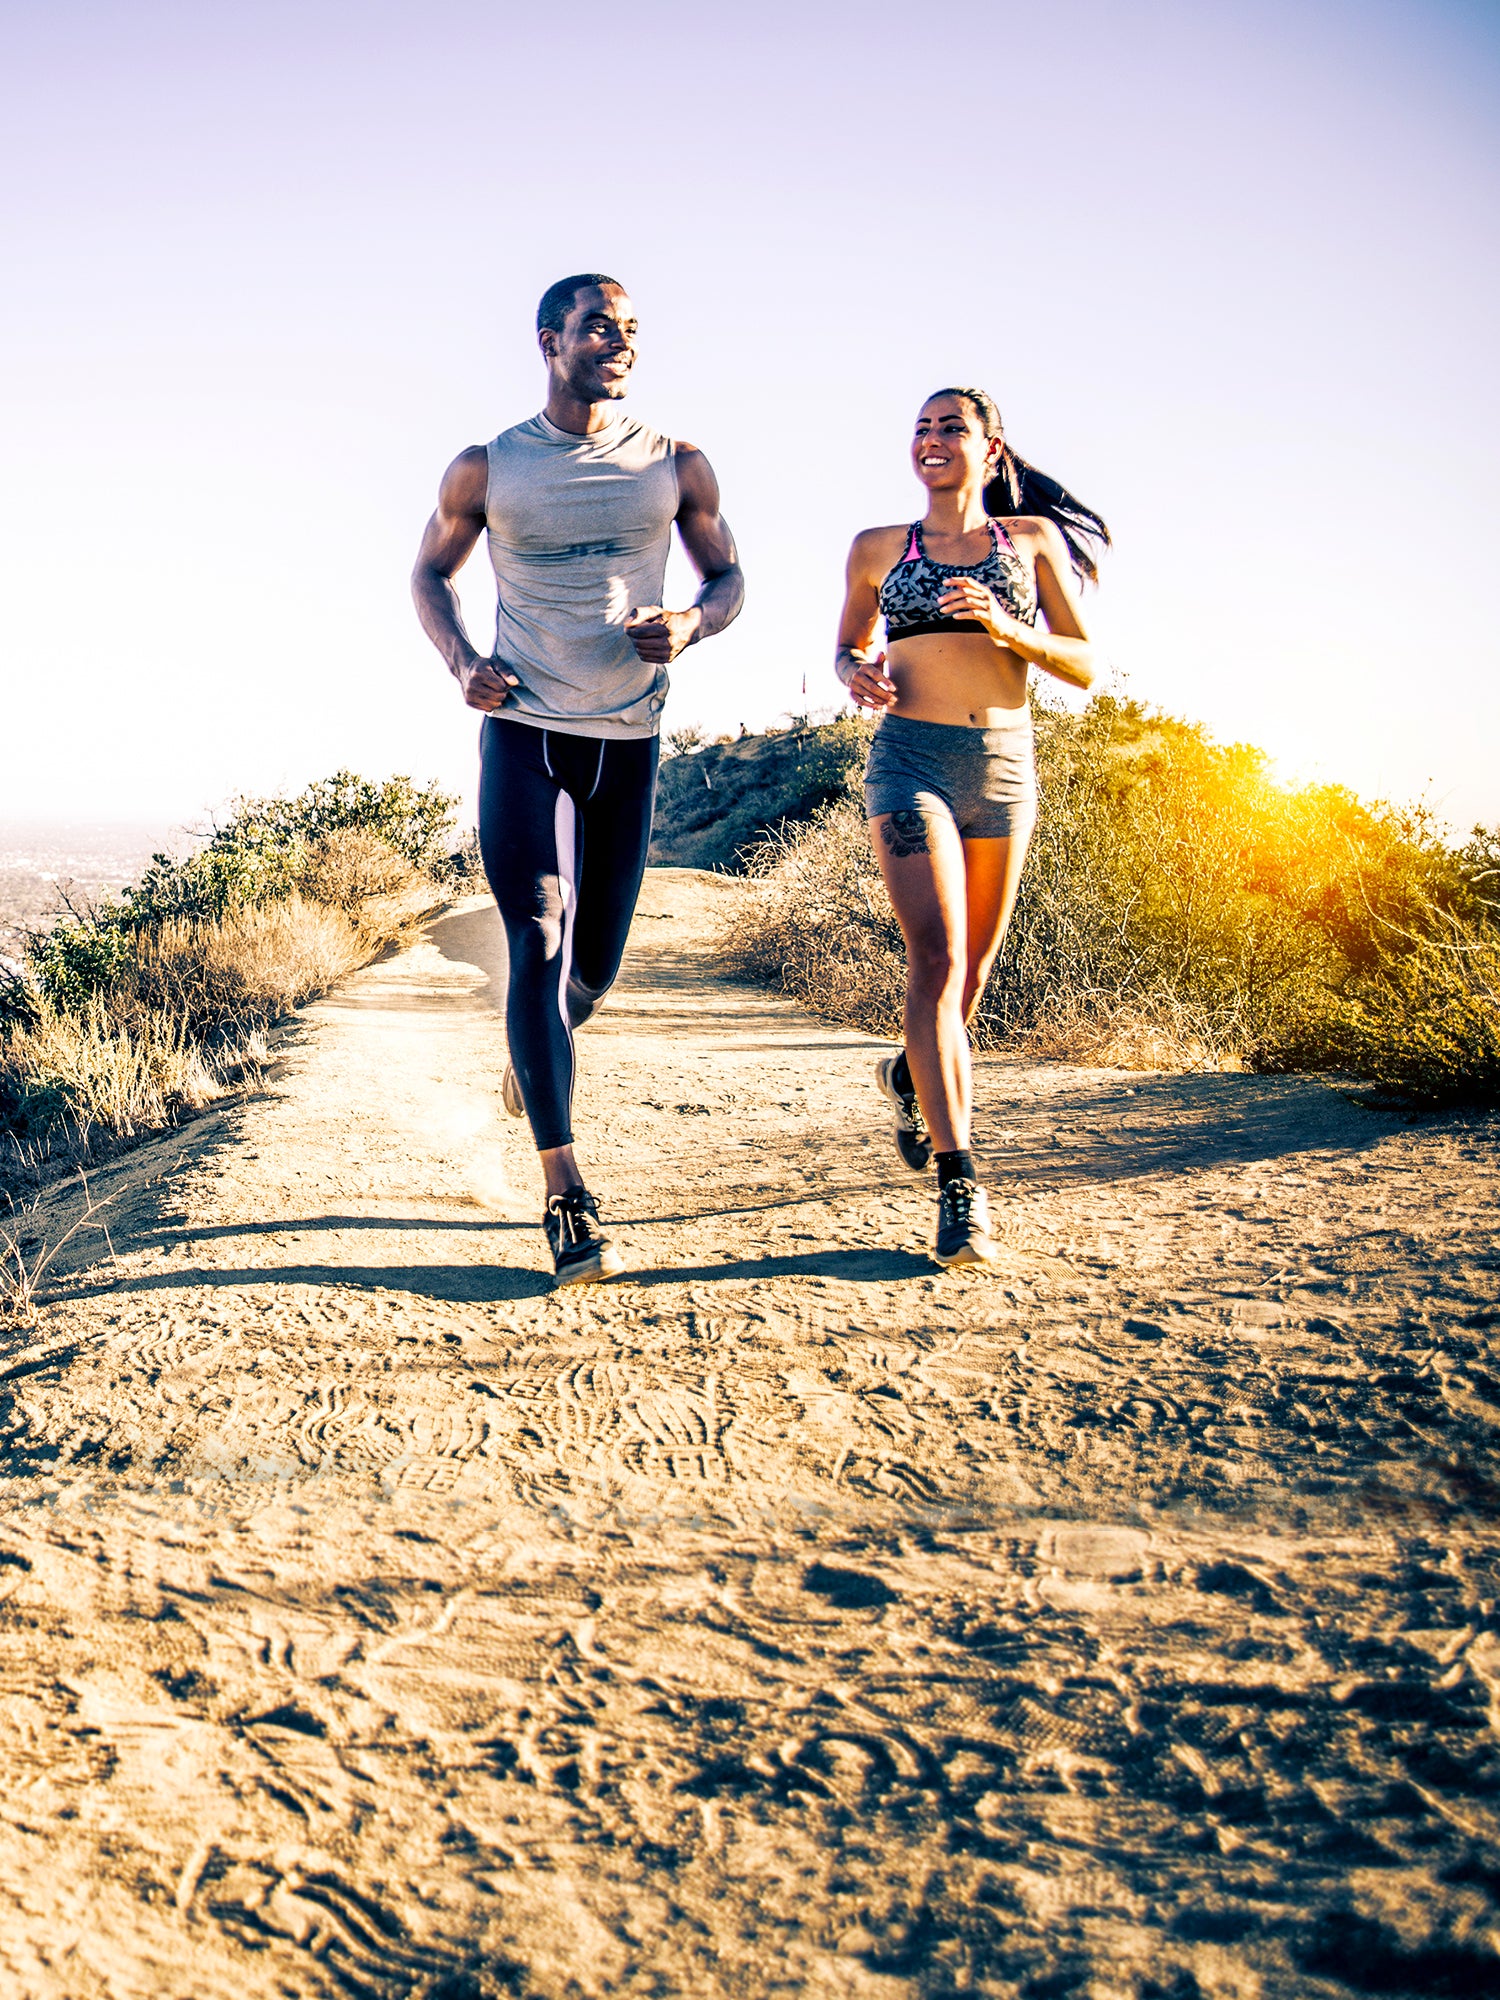 Comment choisir votre système d'hydratation pour la course à pied